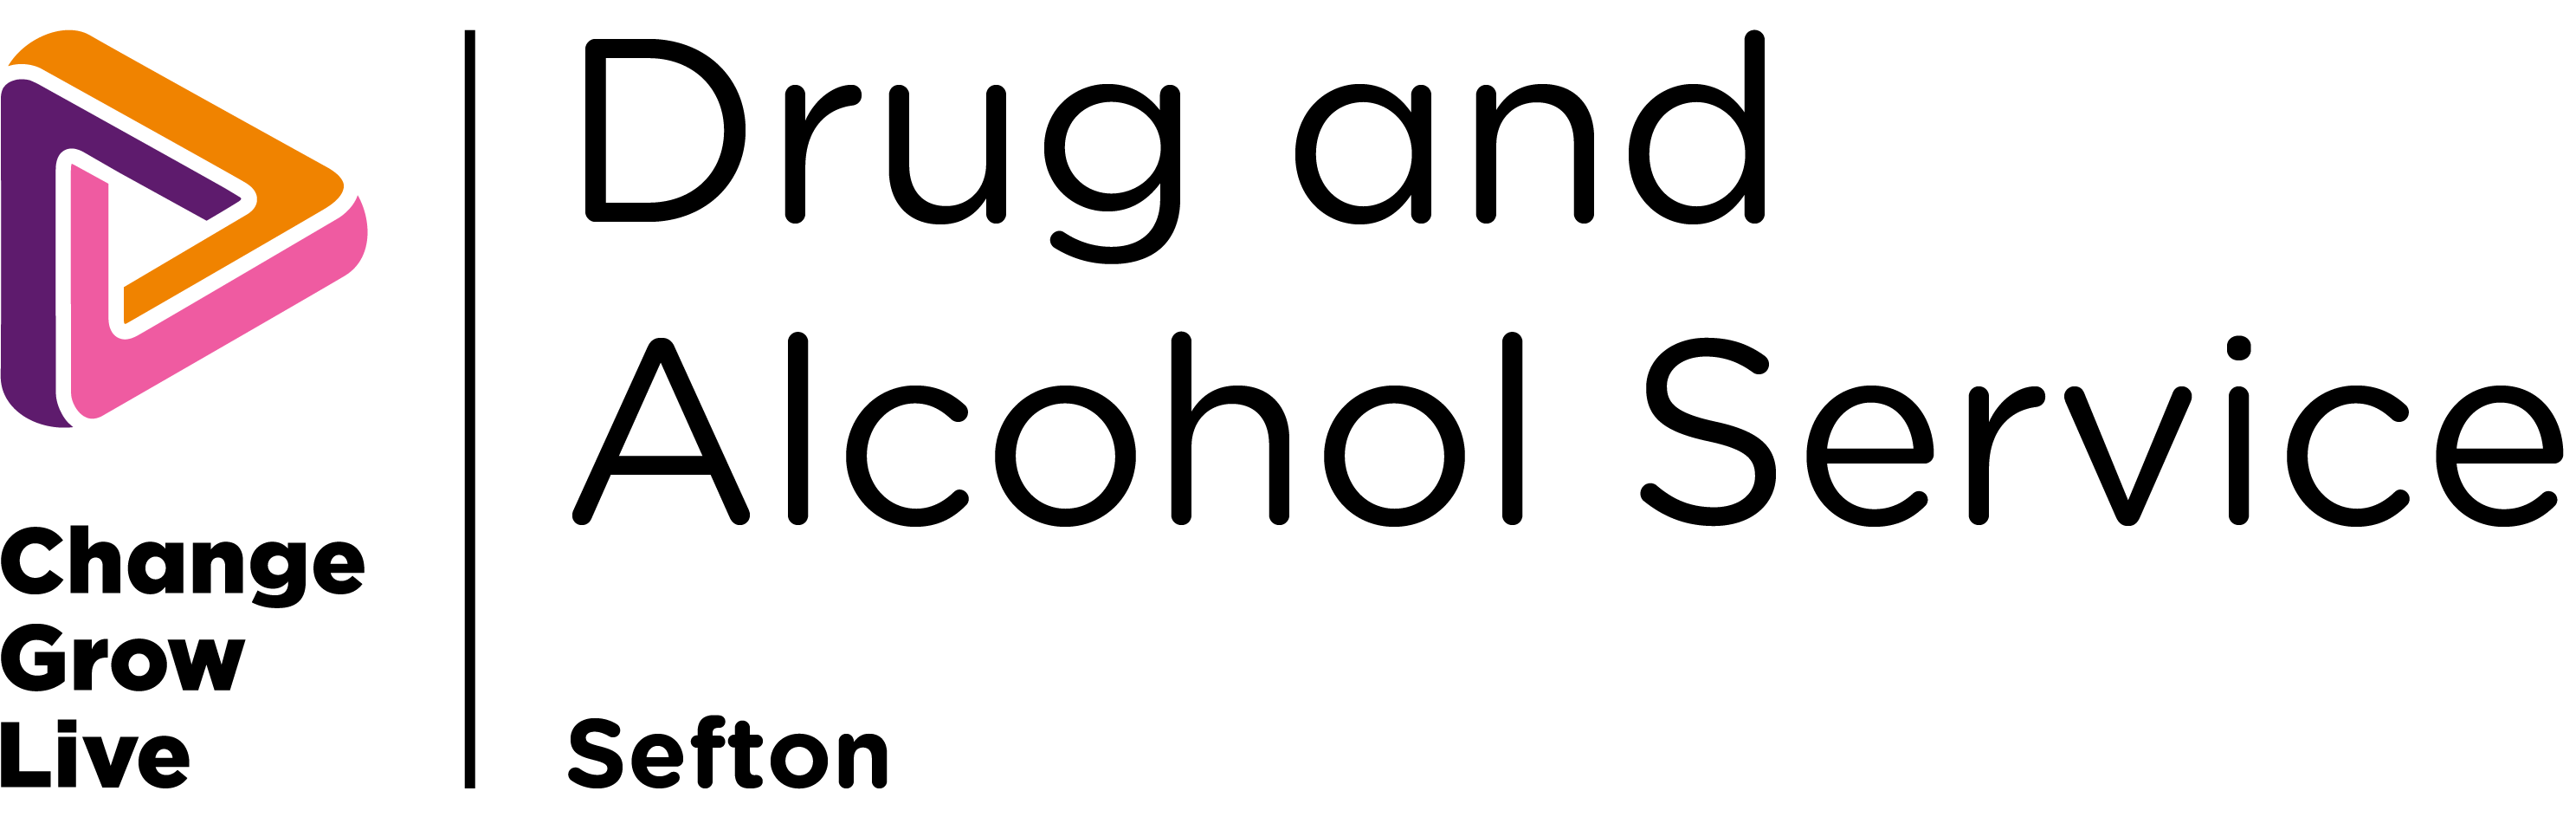 The Sefton service logo